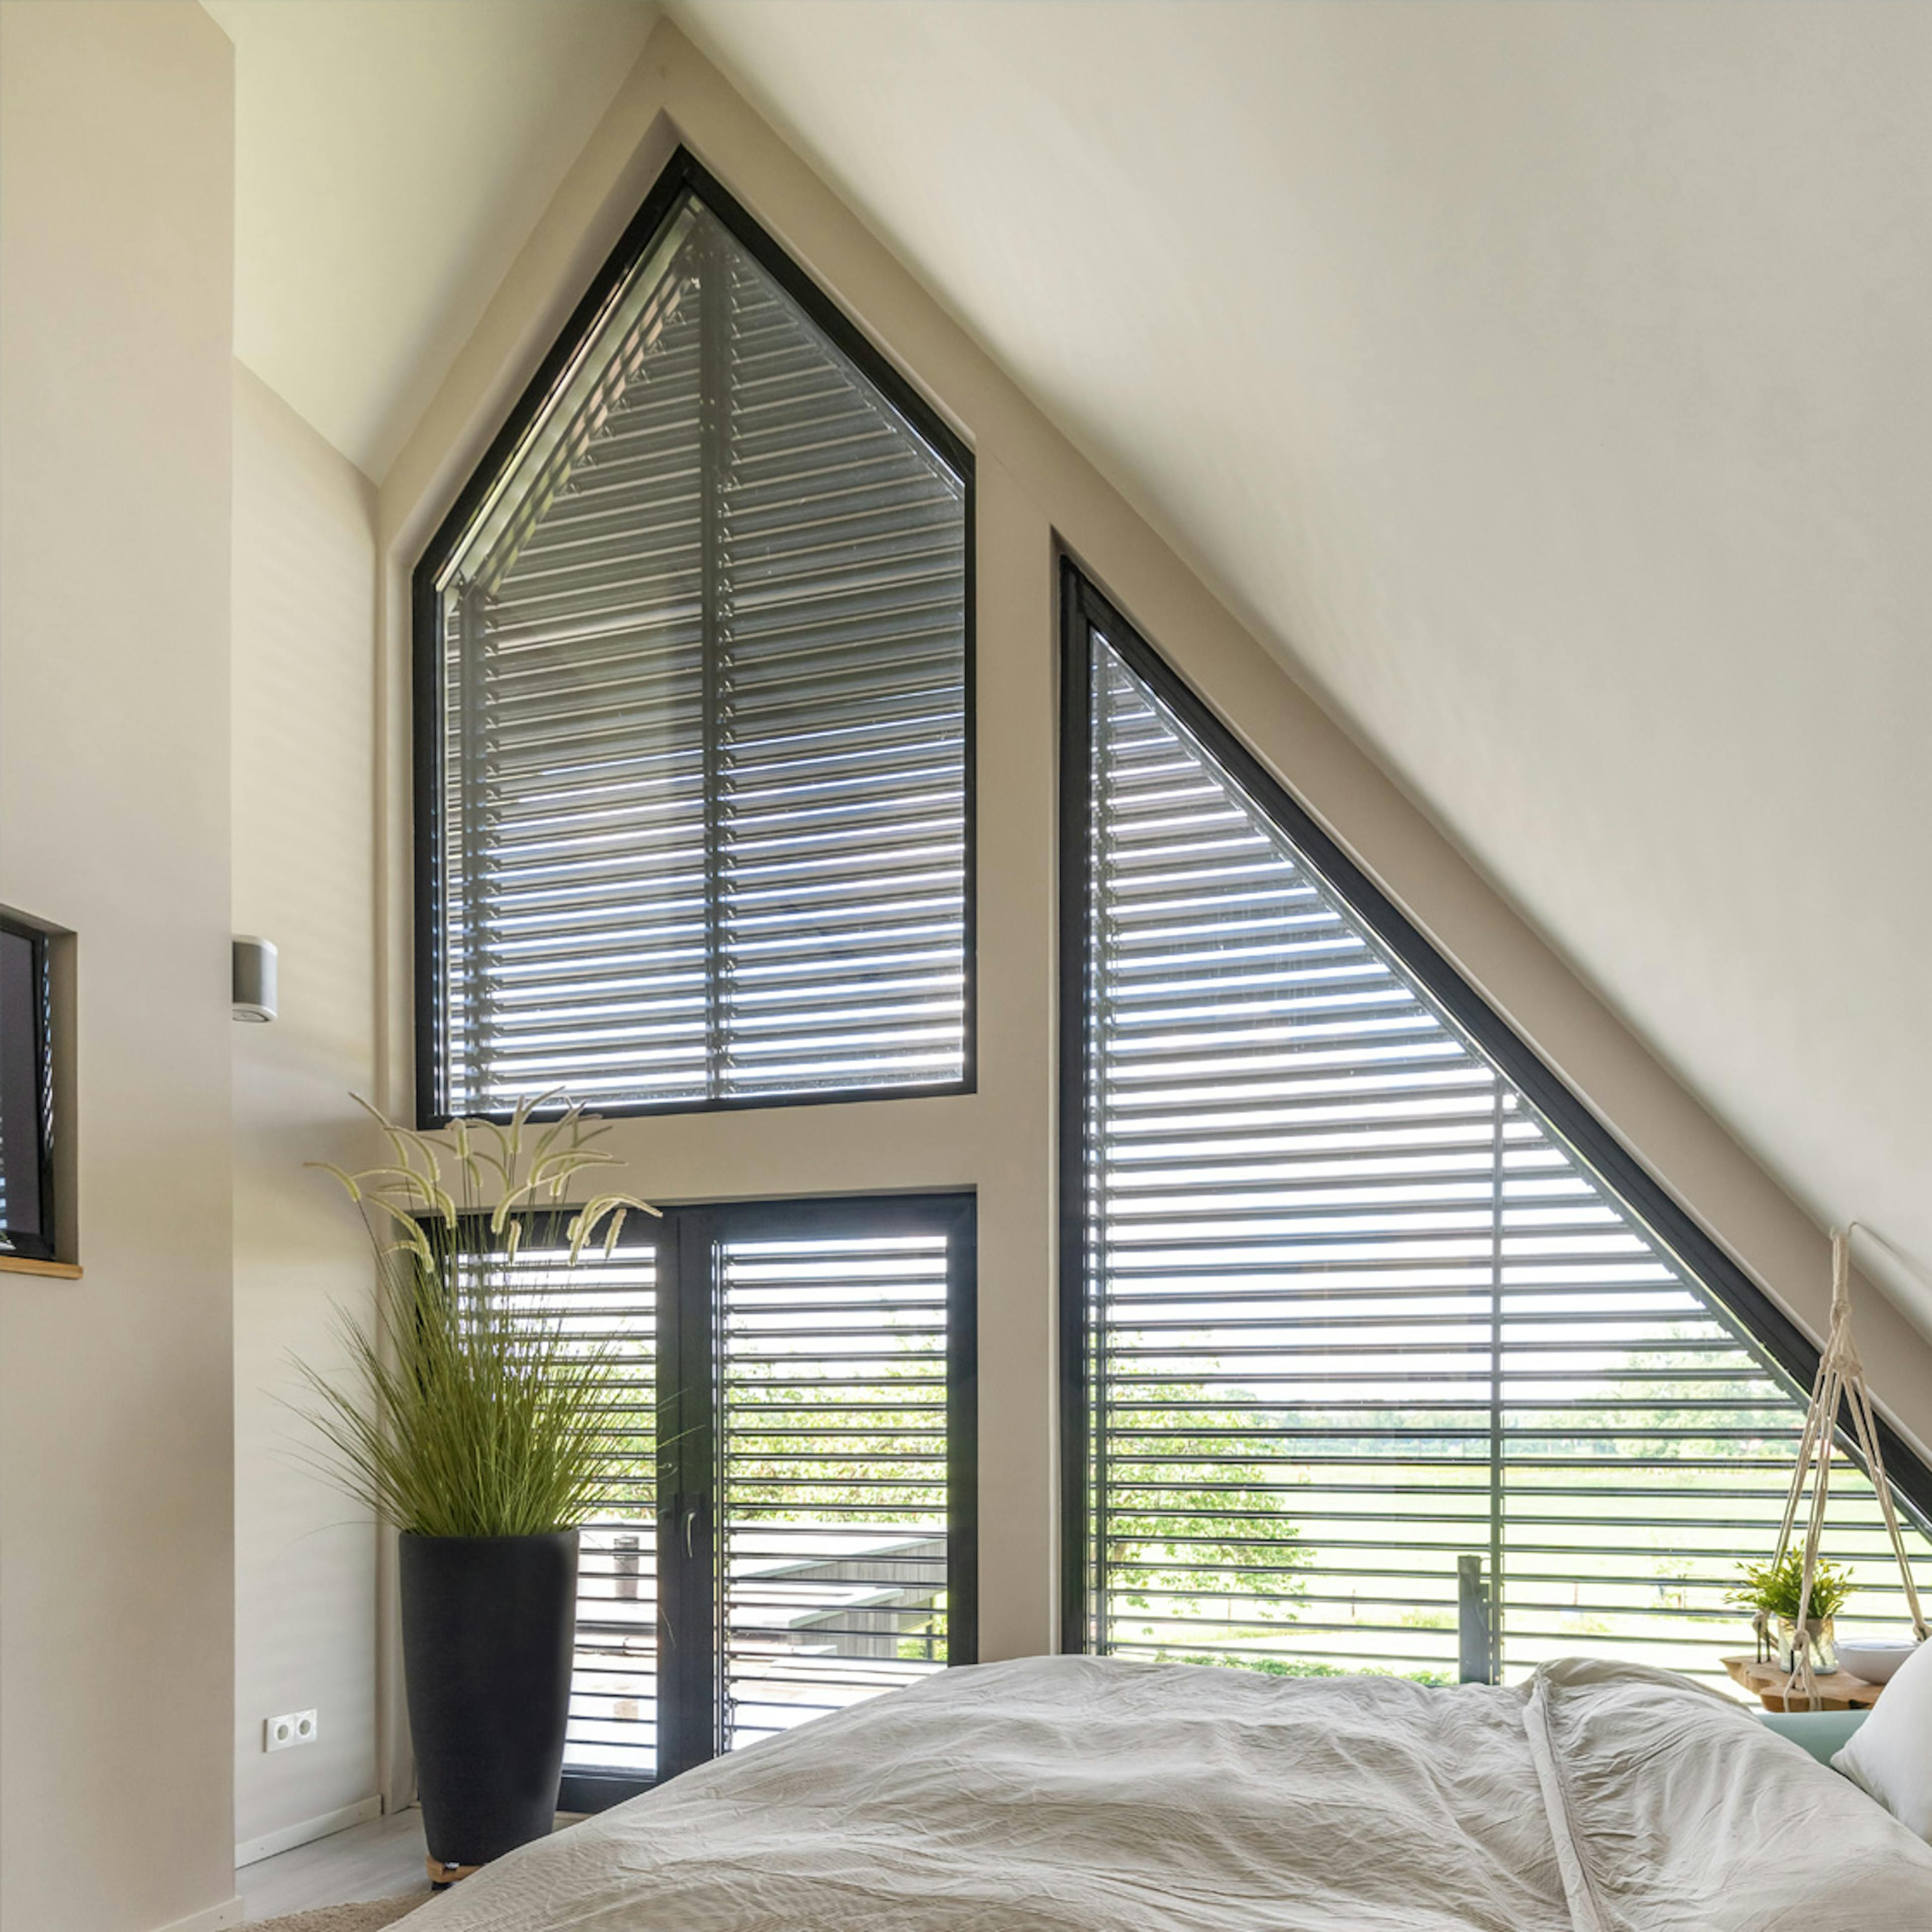 Large, eco-friendly window for abundant daylight.